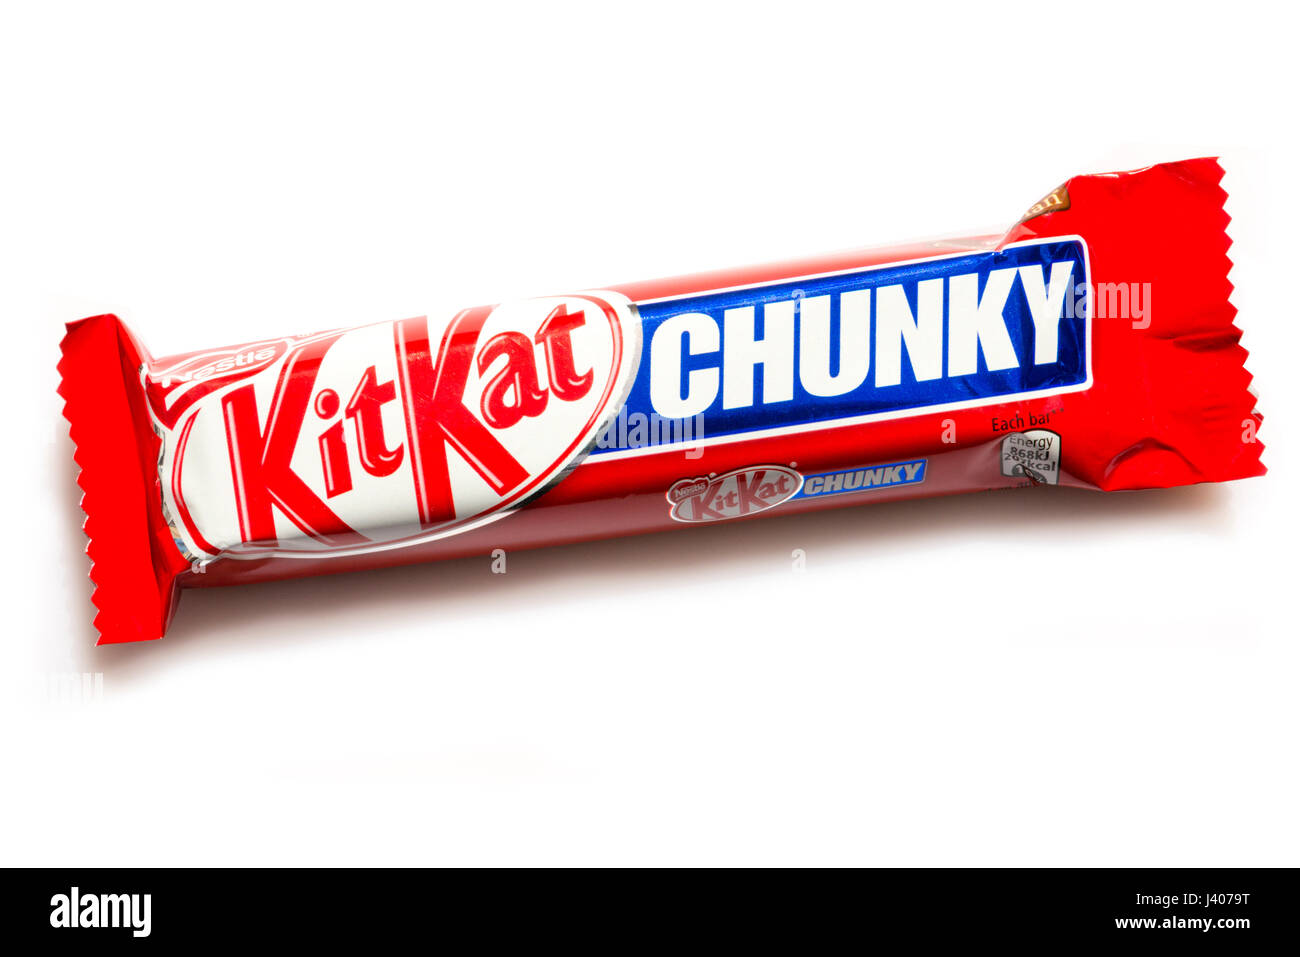 KitKat Chunky ausgeschnitten oder isoliert auf einem weißen Hintergrund, UK. Stockfoto